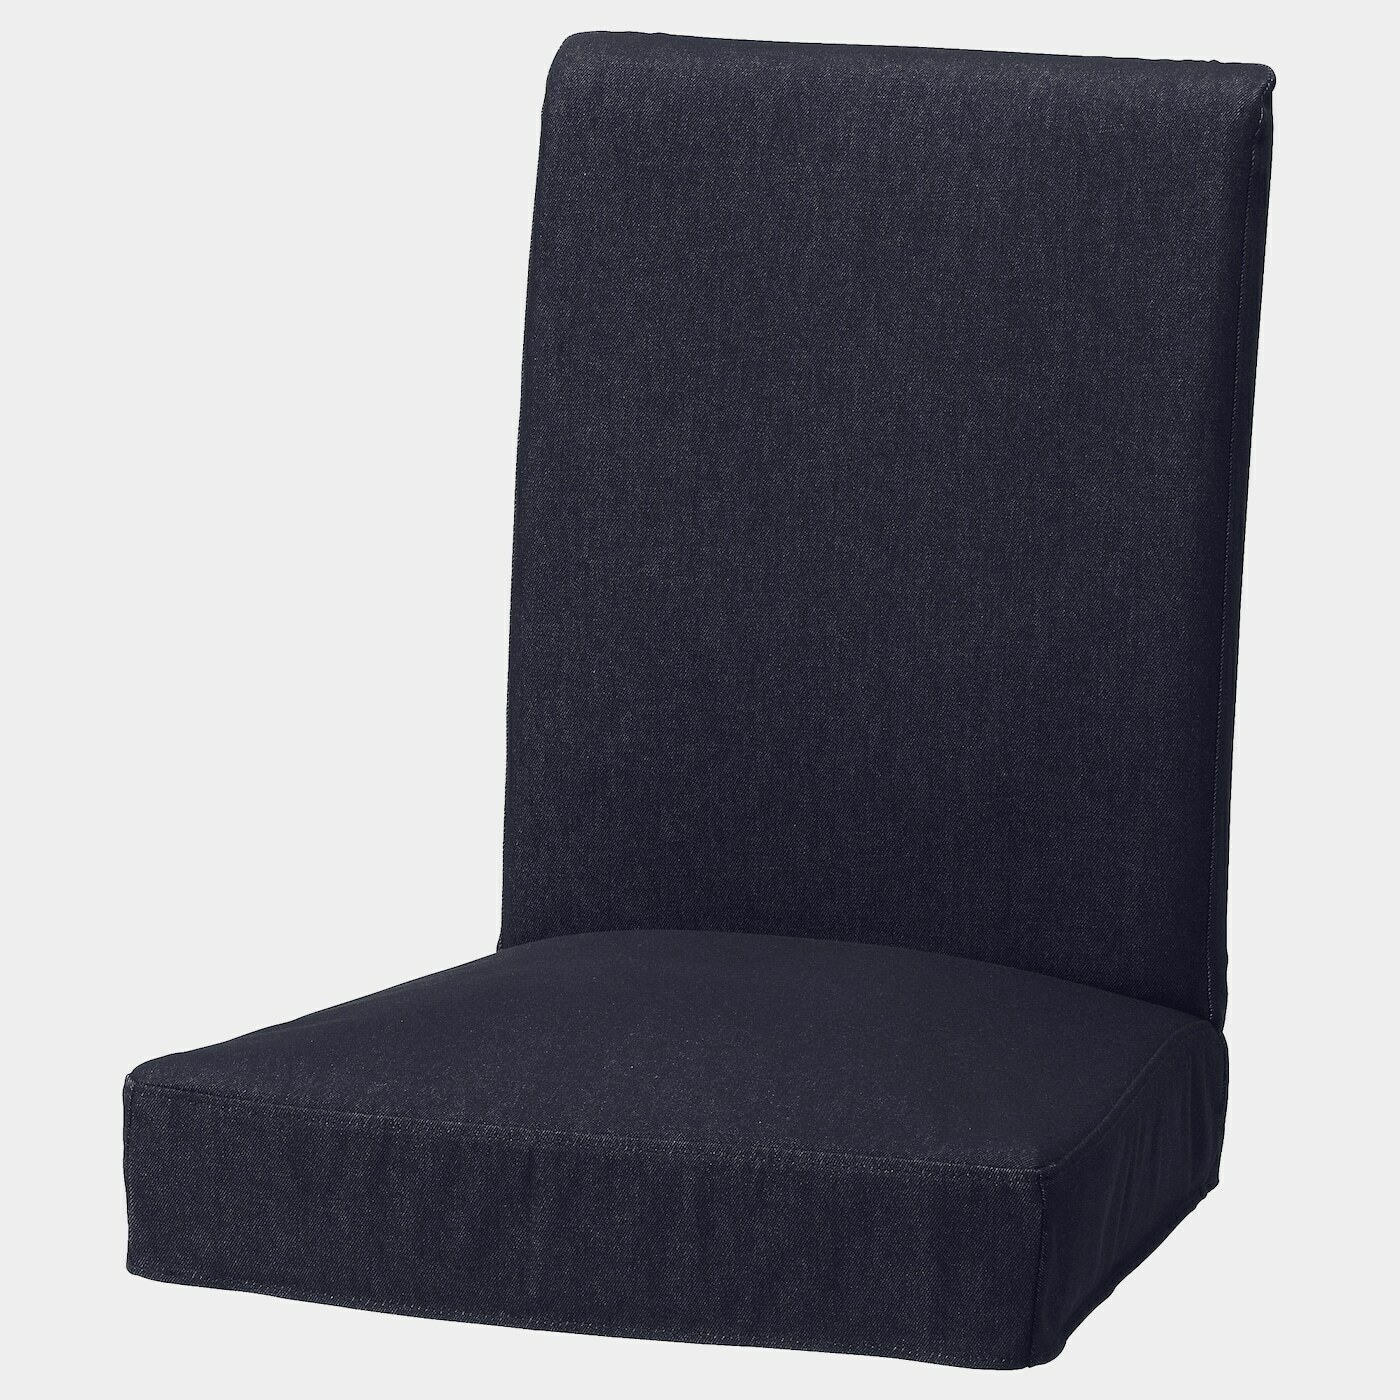 HENRIKSDAL Stuhlbezug  -  - Möbel Ideen für dein Zuhause von Home Trends. Möbel Trends von Social Media Influencer für dein Skandi Zuhause.